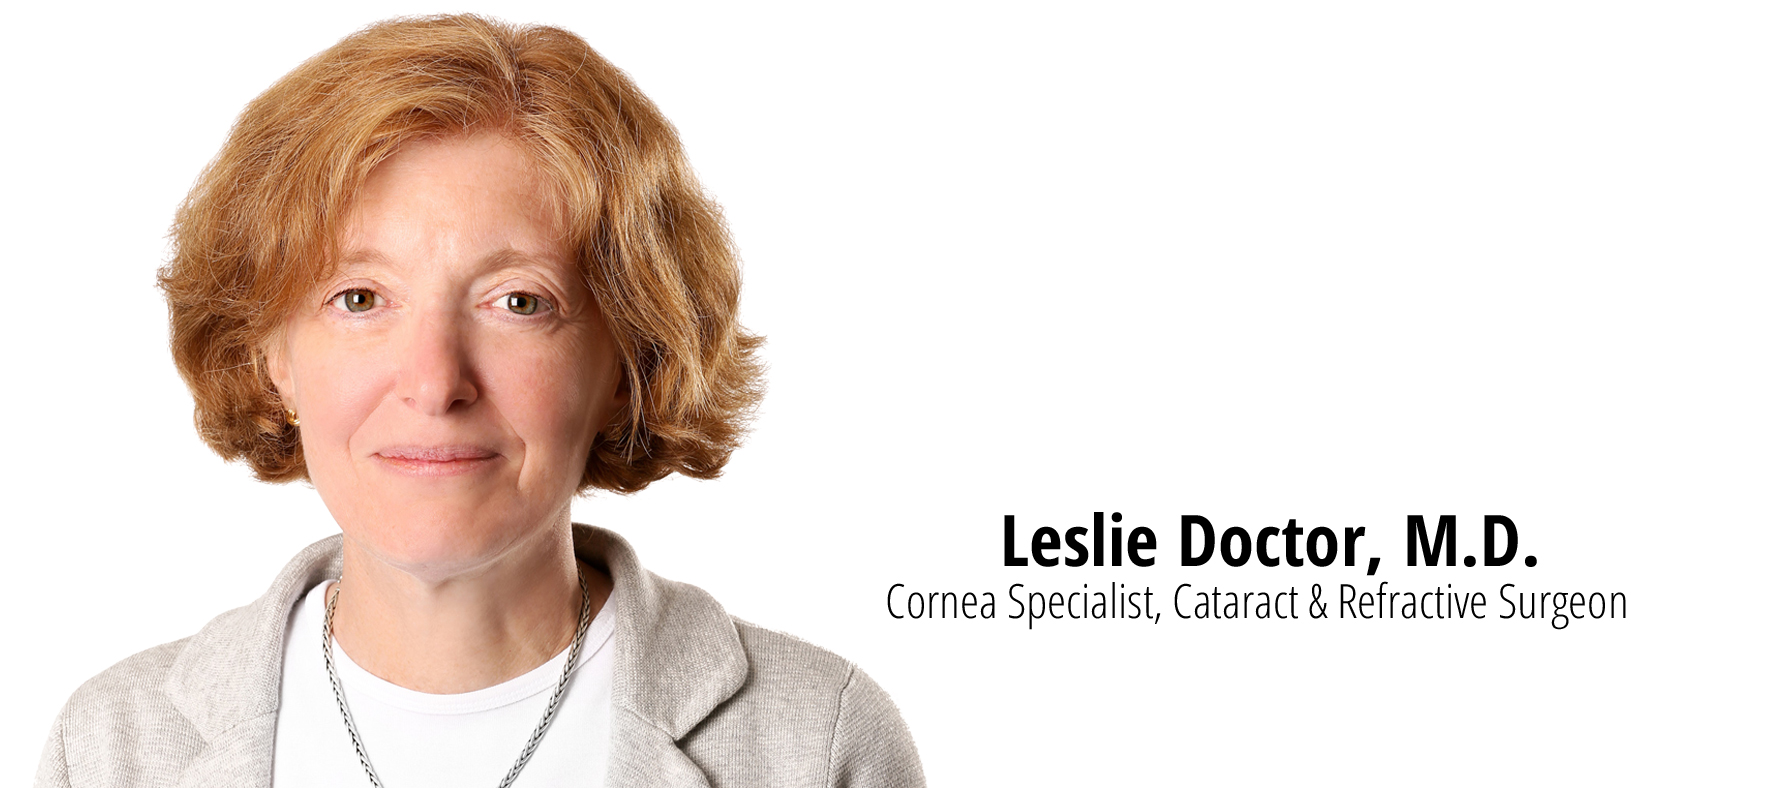 Leslie Doctor, M.D.